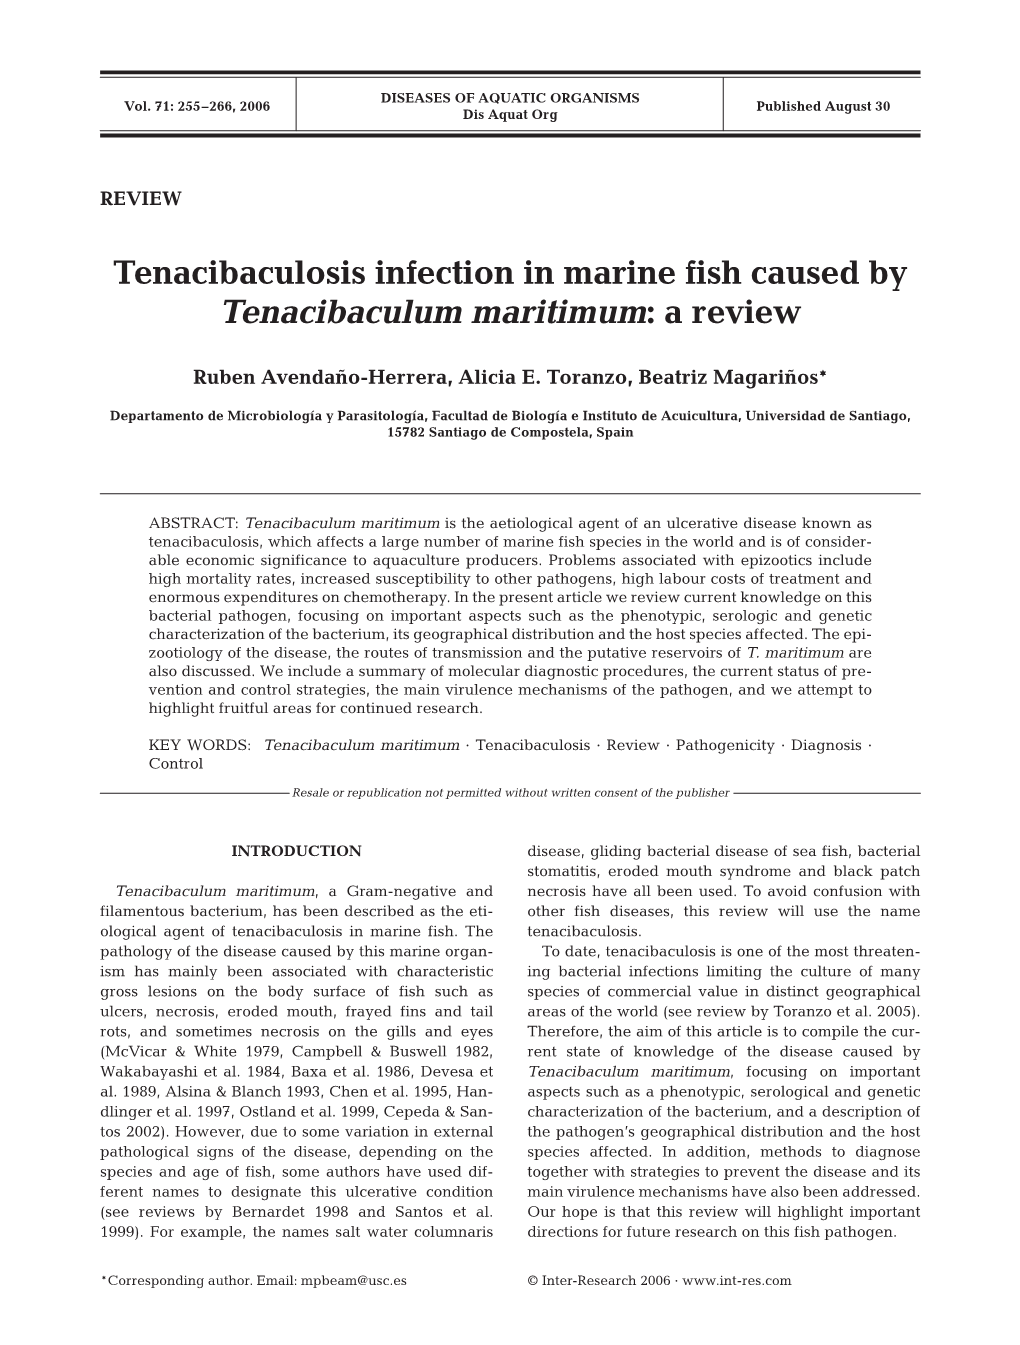 Tenacibaculosis Infection in Marine Fish Caused by Tenacibaculum Maritimum: a Review